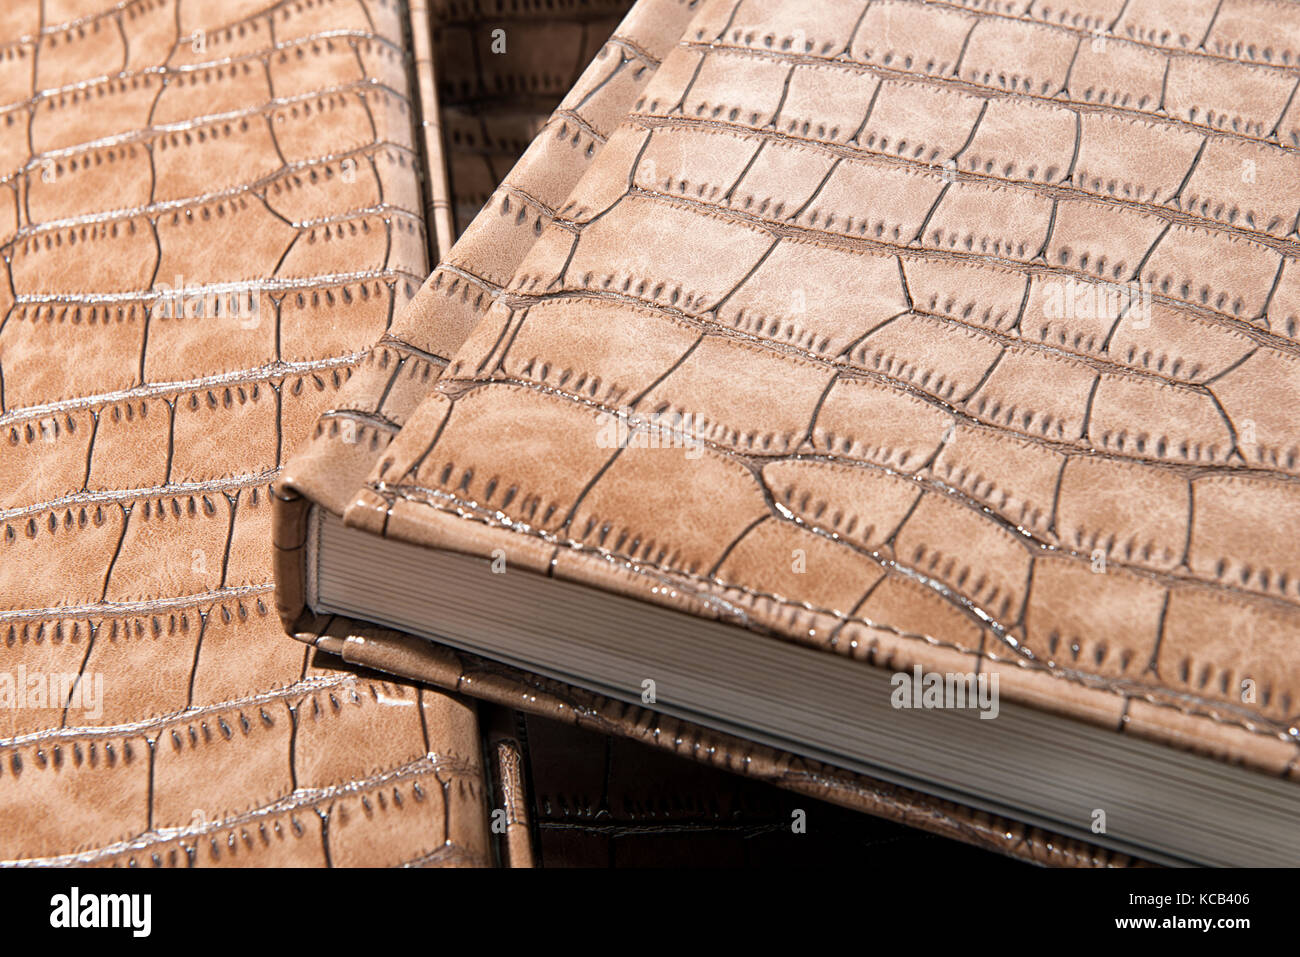 die Wirbelsäule des Buches hautnah auf einem hellen Hintergrund Stockfoto